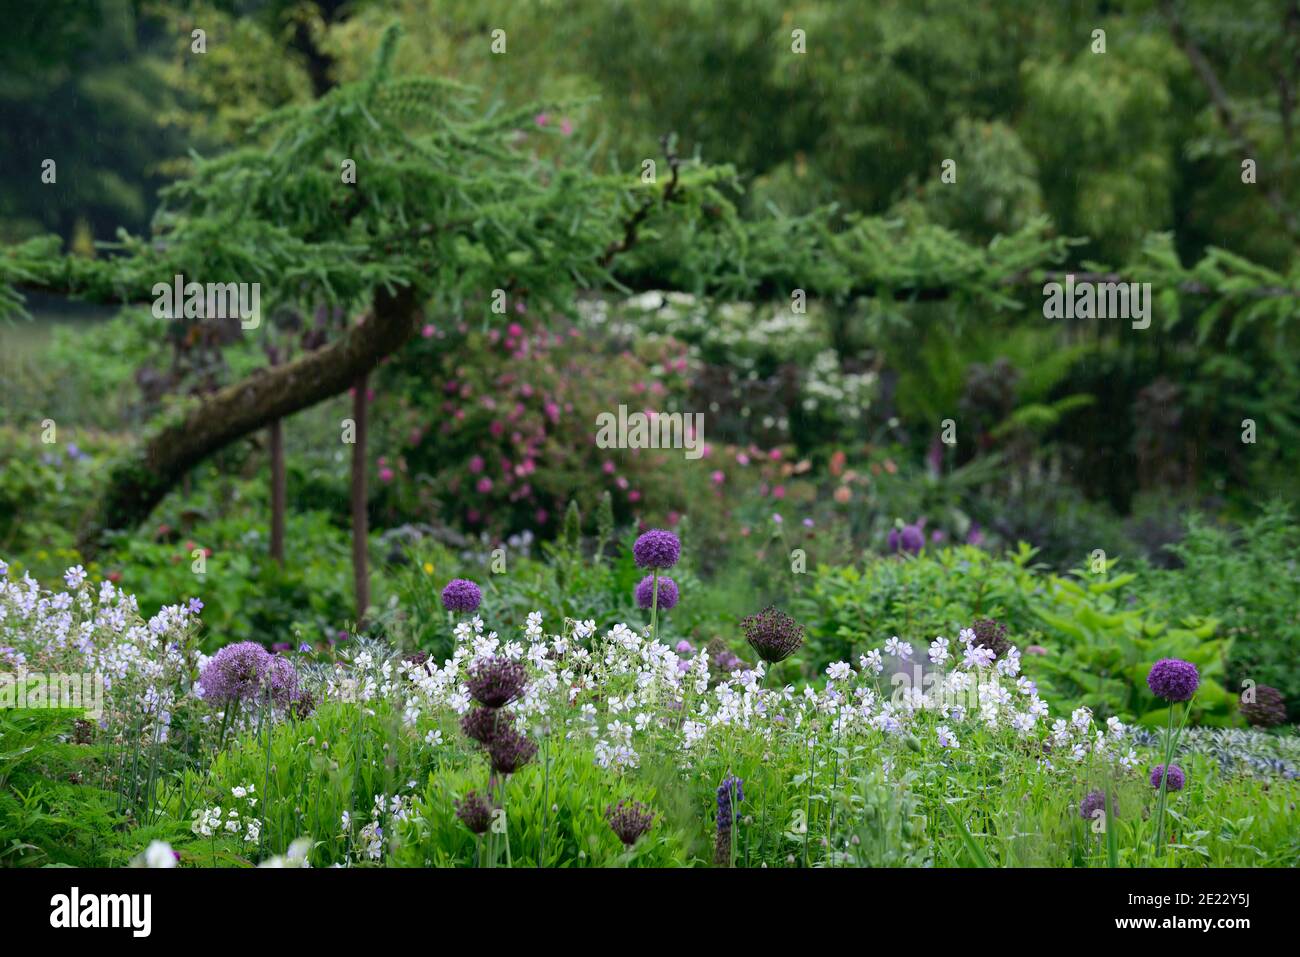 allium atropurpureum,Allium hollandicum Purple Sensation,geranium splish splash,alliums and geraniums,allium and geranium,purple white blue flowers,fl Stock Photo